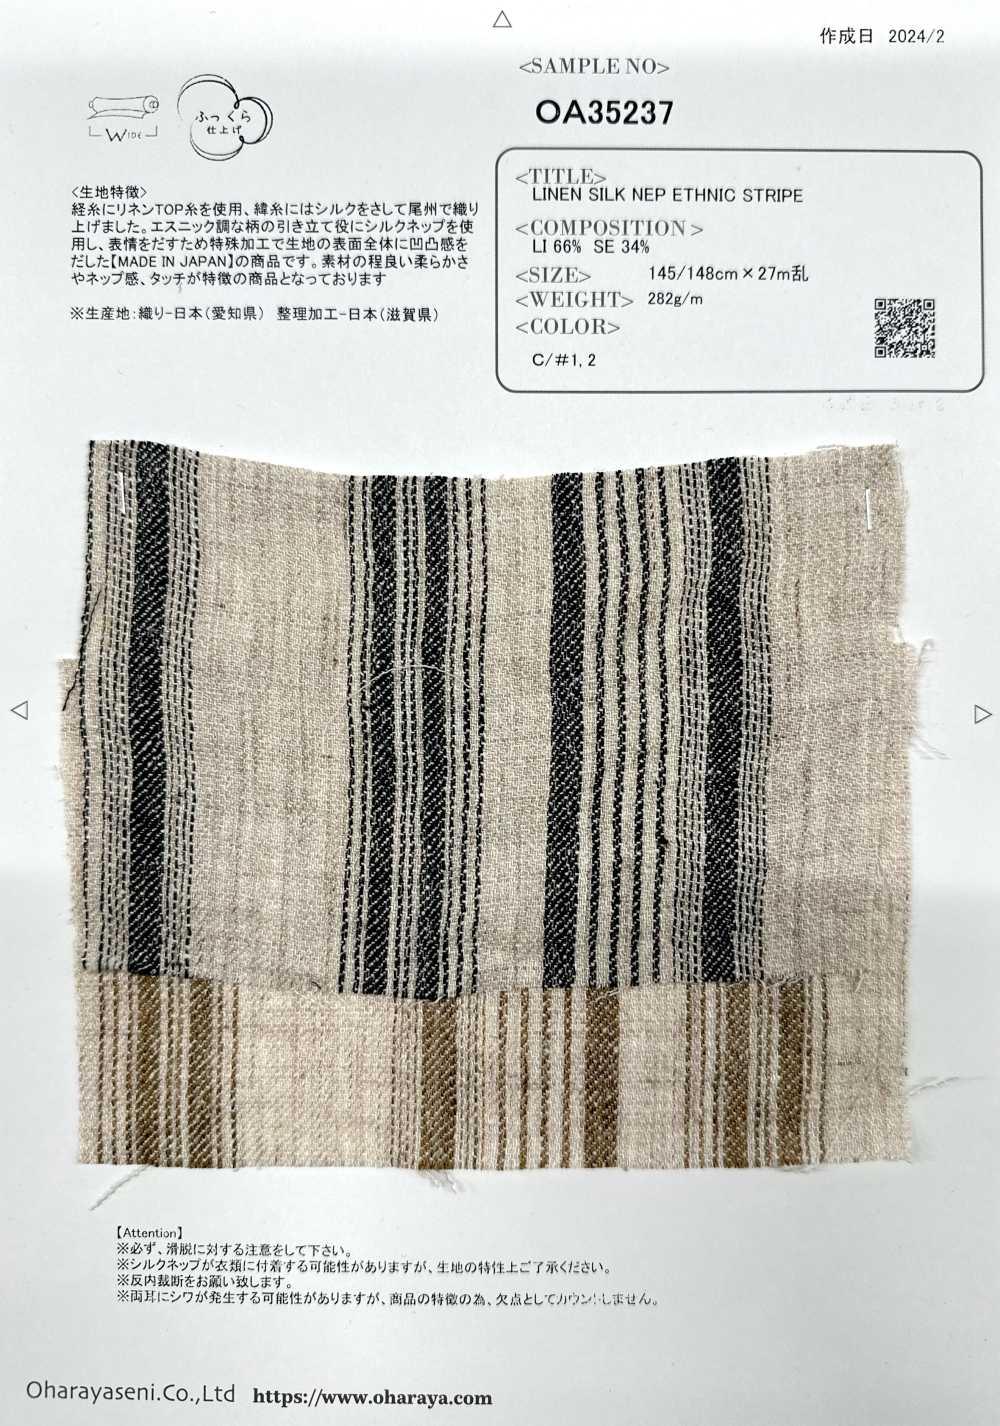 OA35237 Cotone Supima E Lino Francese × SILK 2/1 Super Twill Con Finitura Setosa[Tessile / Tessuto] Oharayaseni